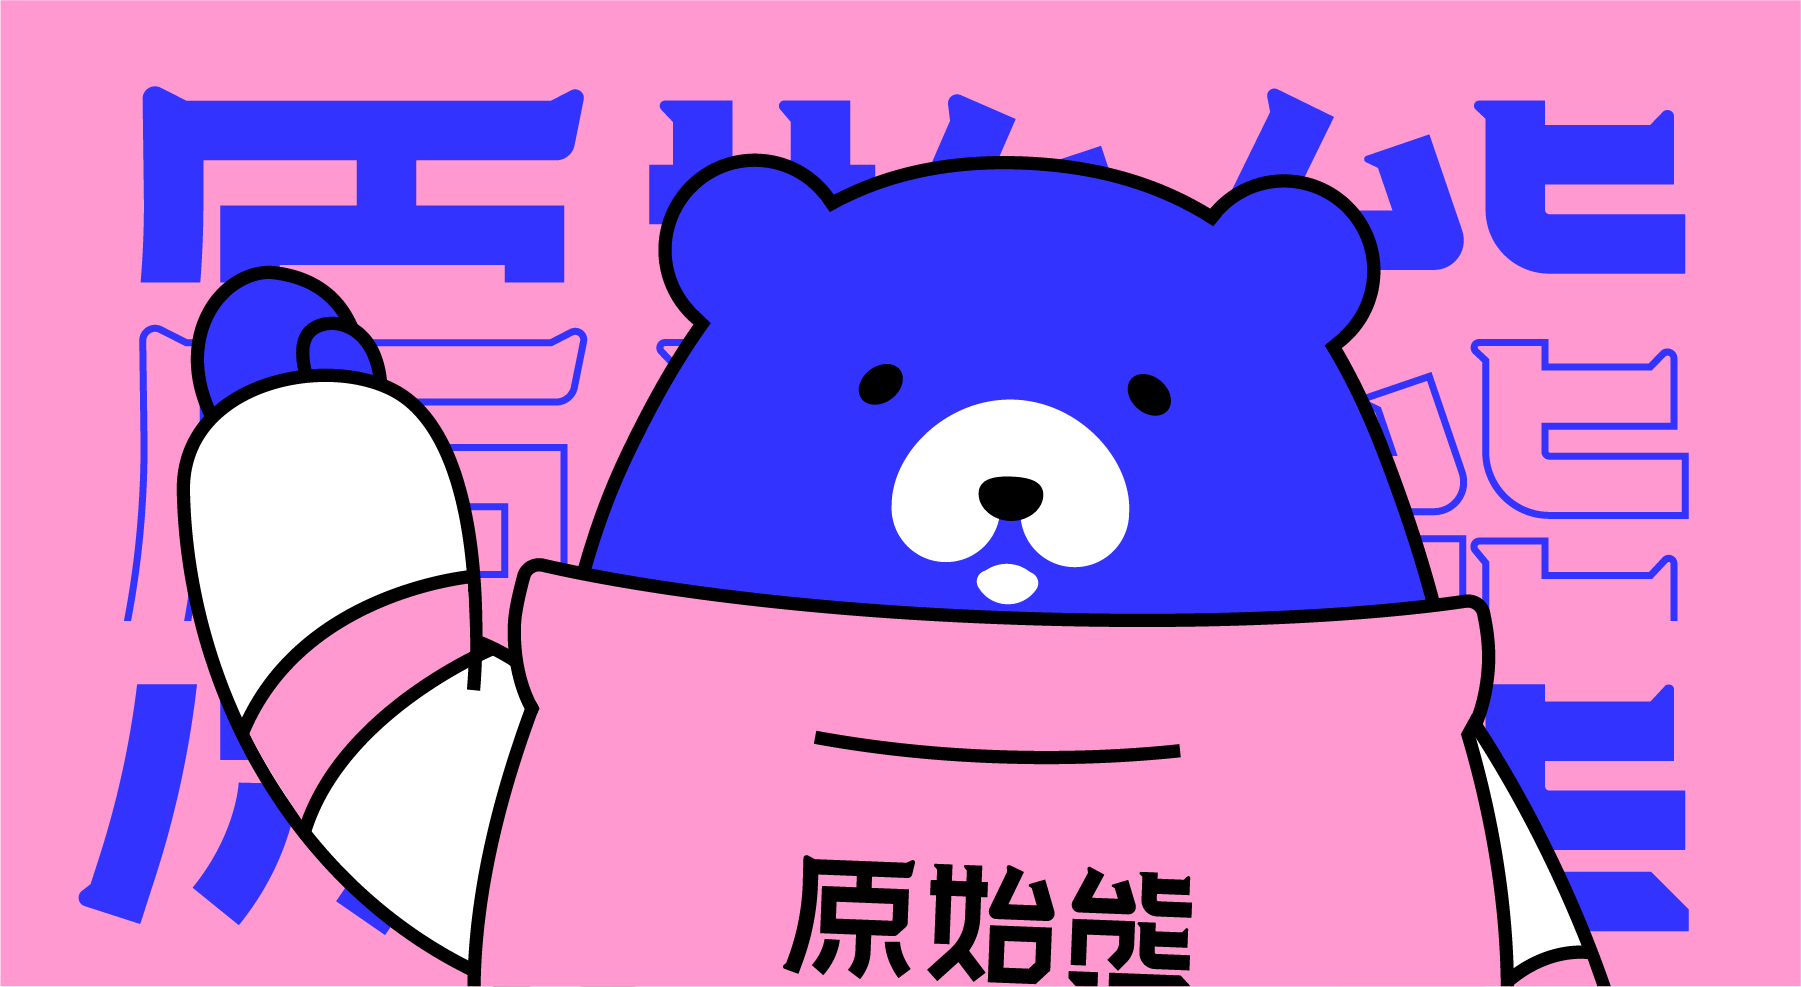 网站上传原始熊-02.jpg